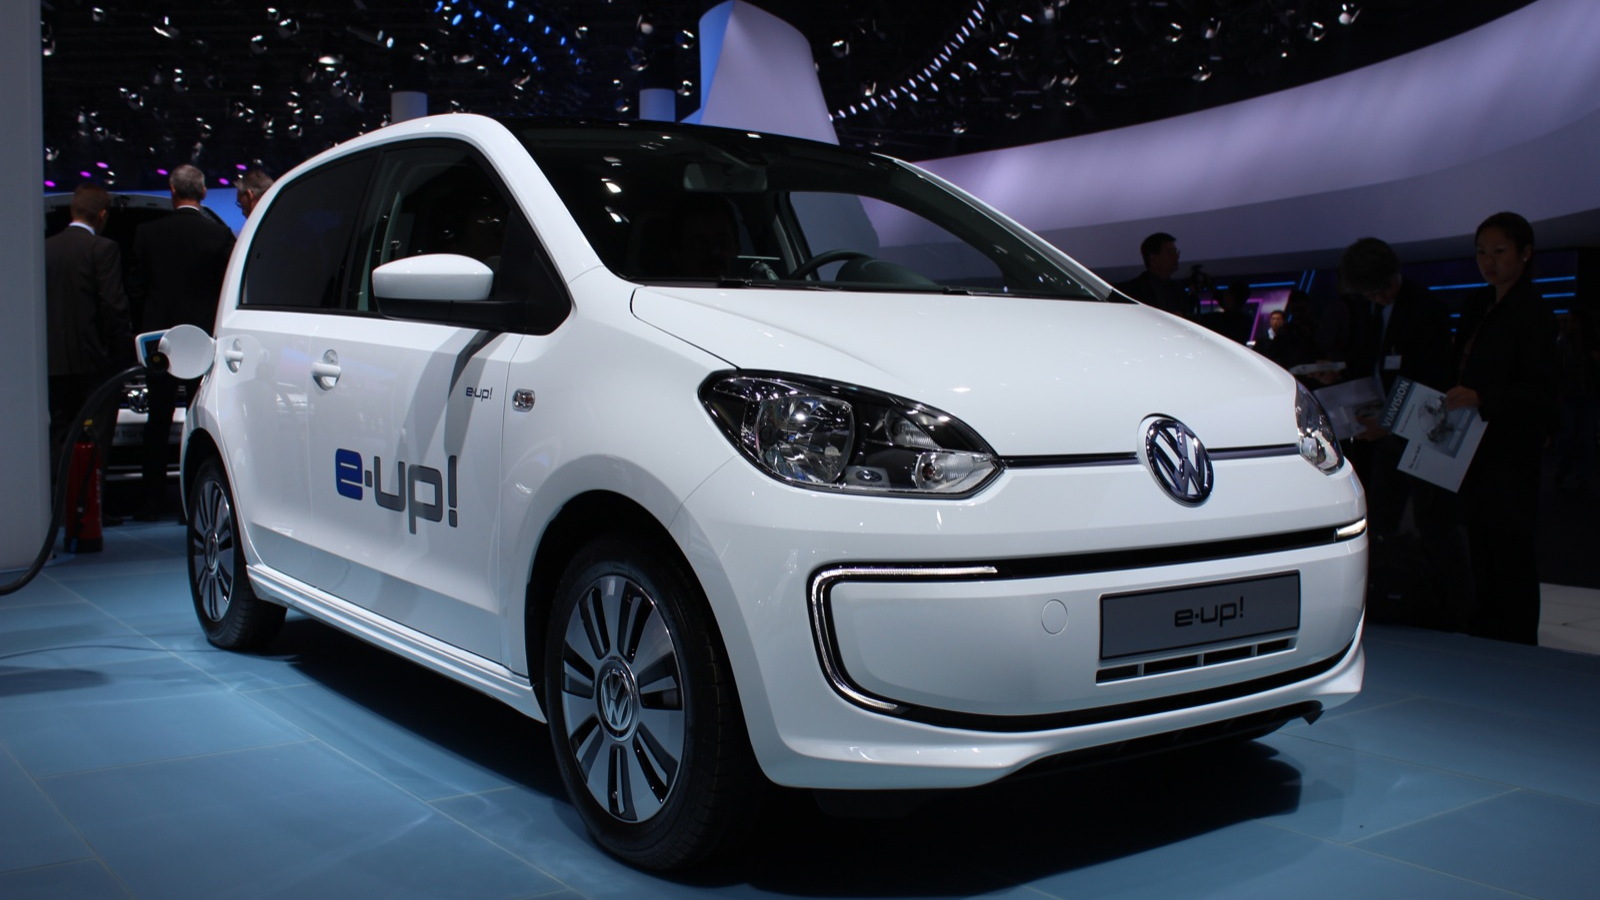 Volkswagen e-Up!  -  2013 Frankfurt Motor Show